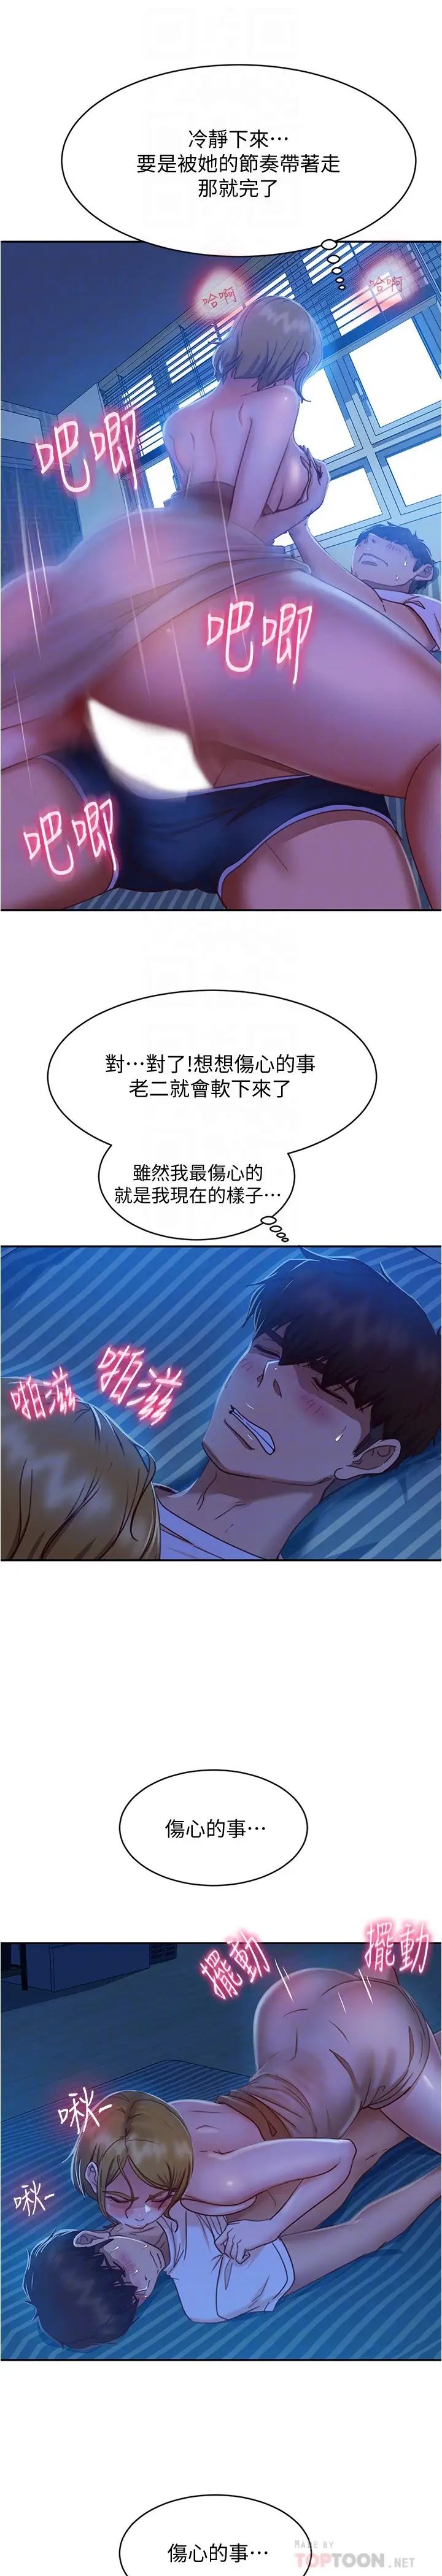 韩国污漫画 不良女房客 第22话用色色的话诱惑志汉 10